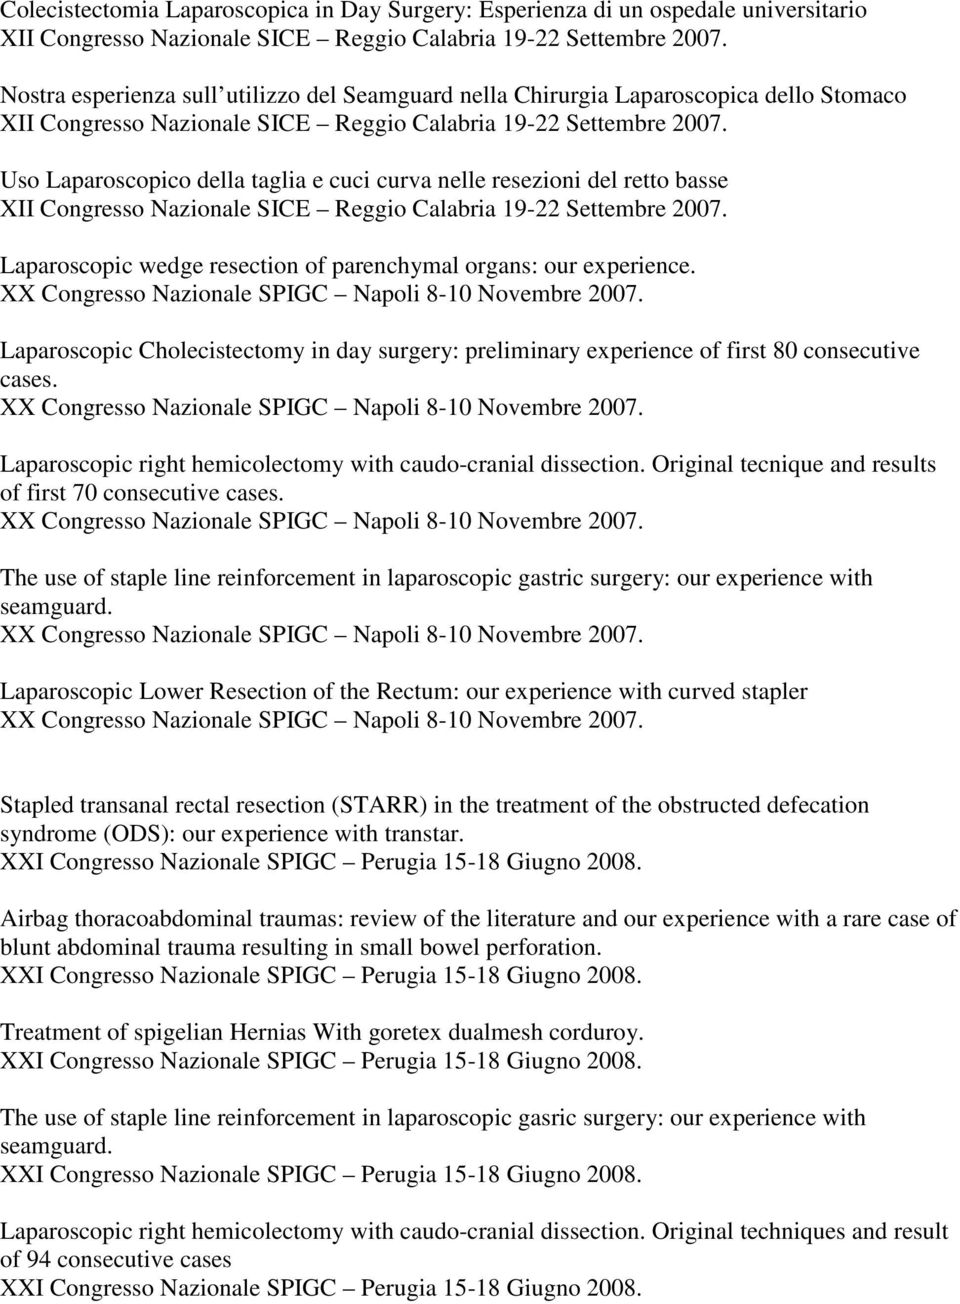 Uso Laparoscopico della taglia e cuci curva nelle resezioni del retto basse XII Congresso Nazionale SICE Reggio Calabria 19-22 Settembre 2007.